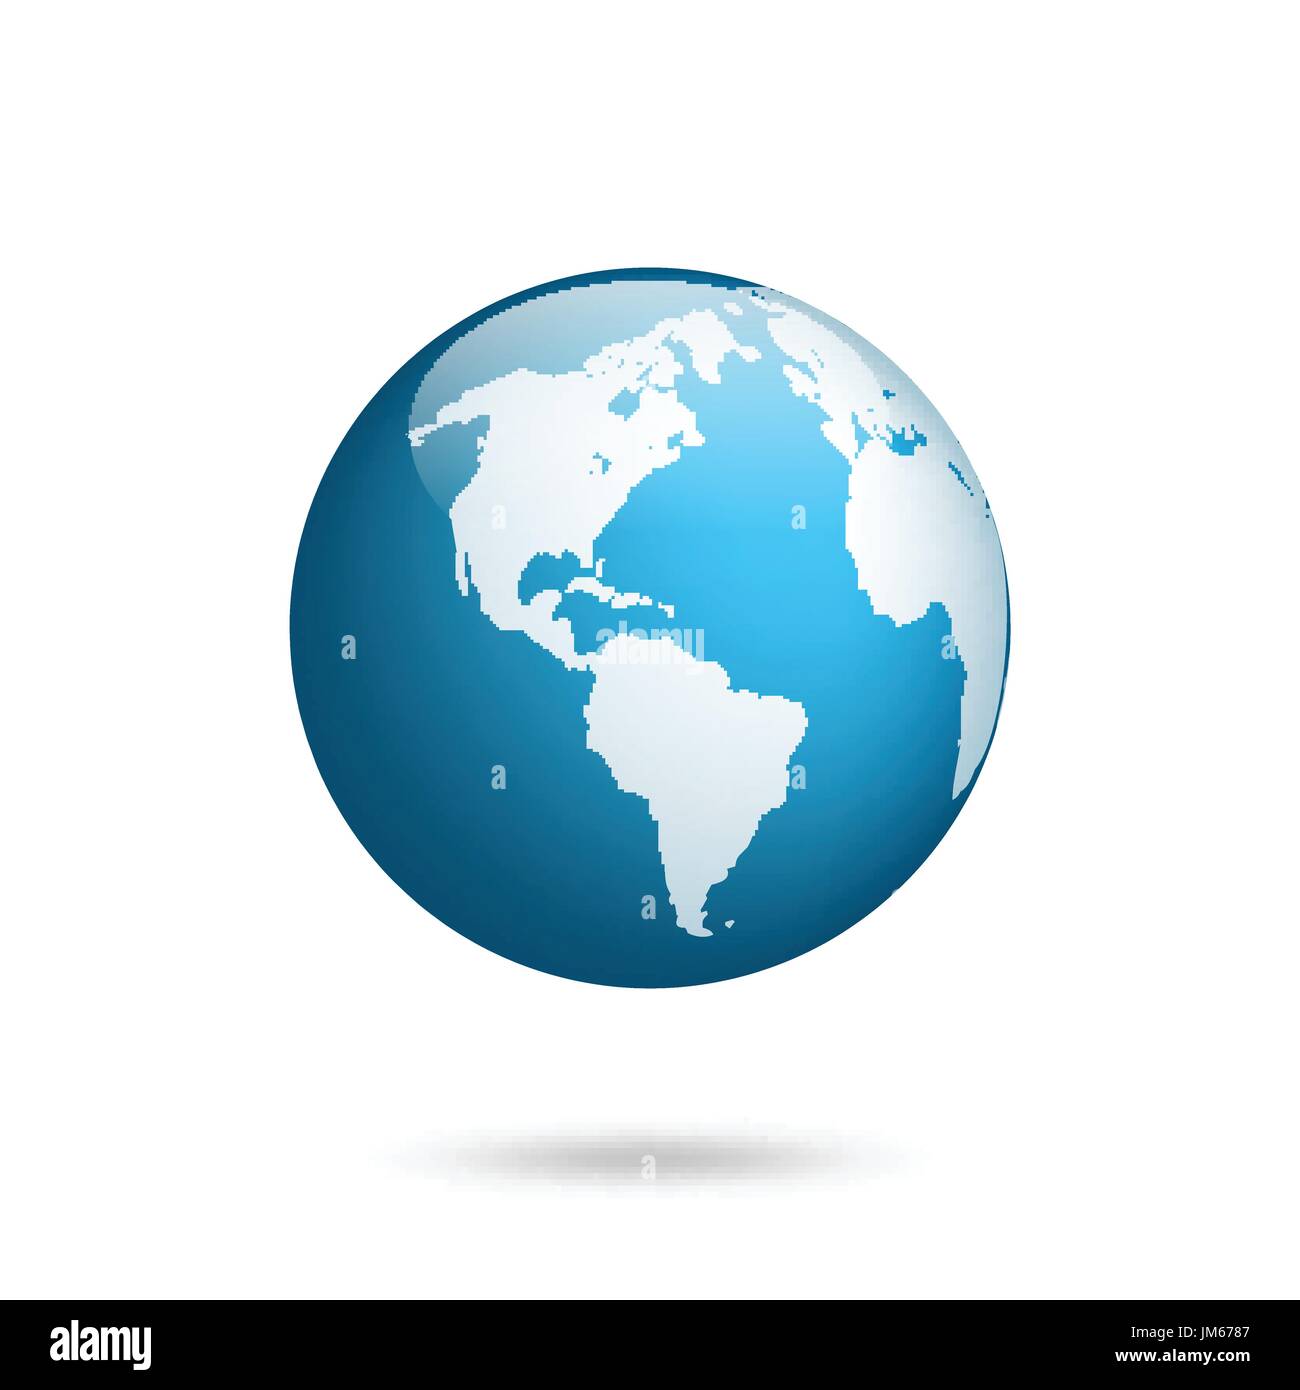 Erdkugel. Welt Karte gesetzt. Planeten mit Kontinenten. Afrika Asien, Australien, Europa, Nordamerika und Südamerika. Stock Vektor